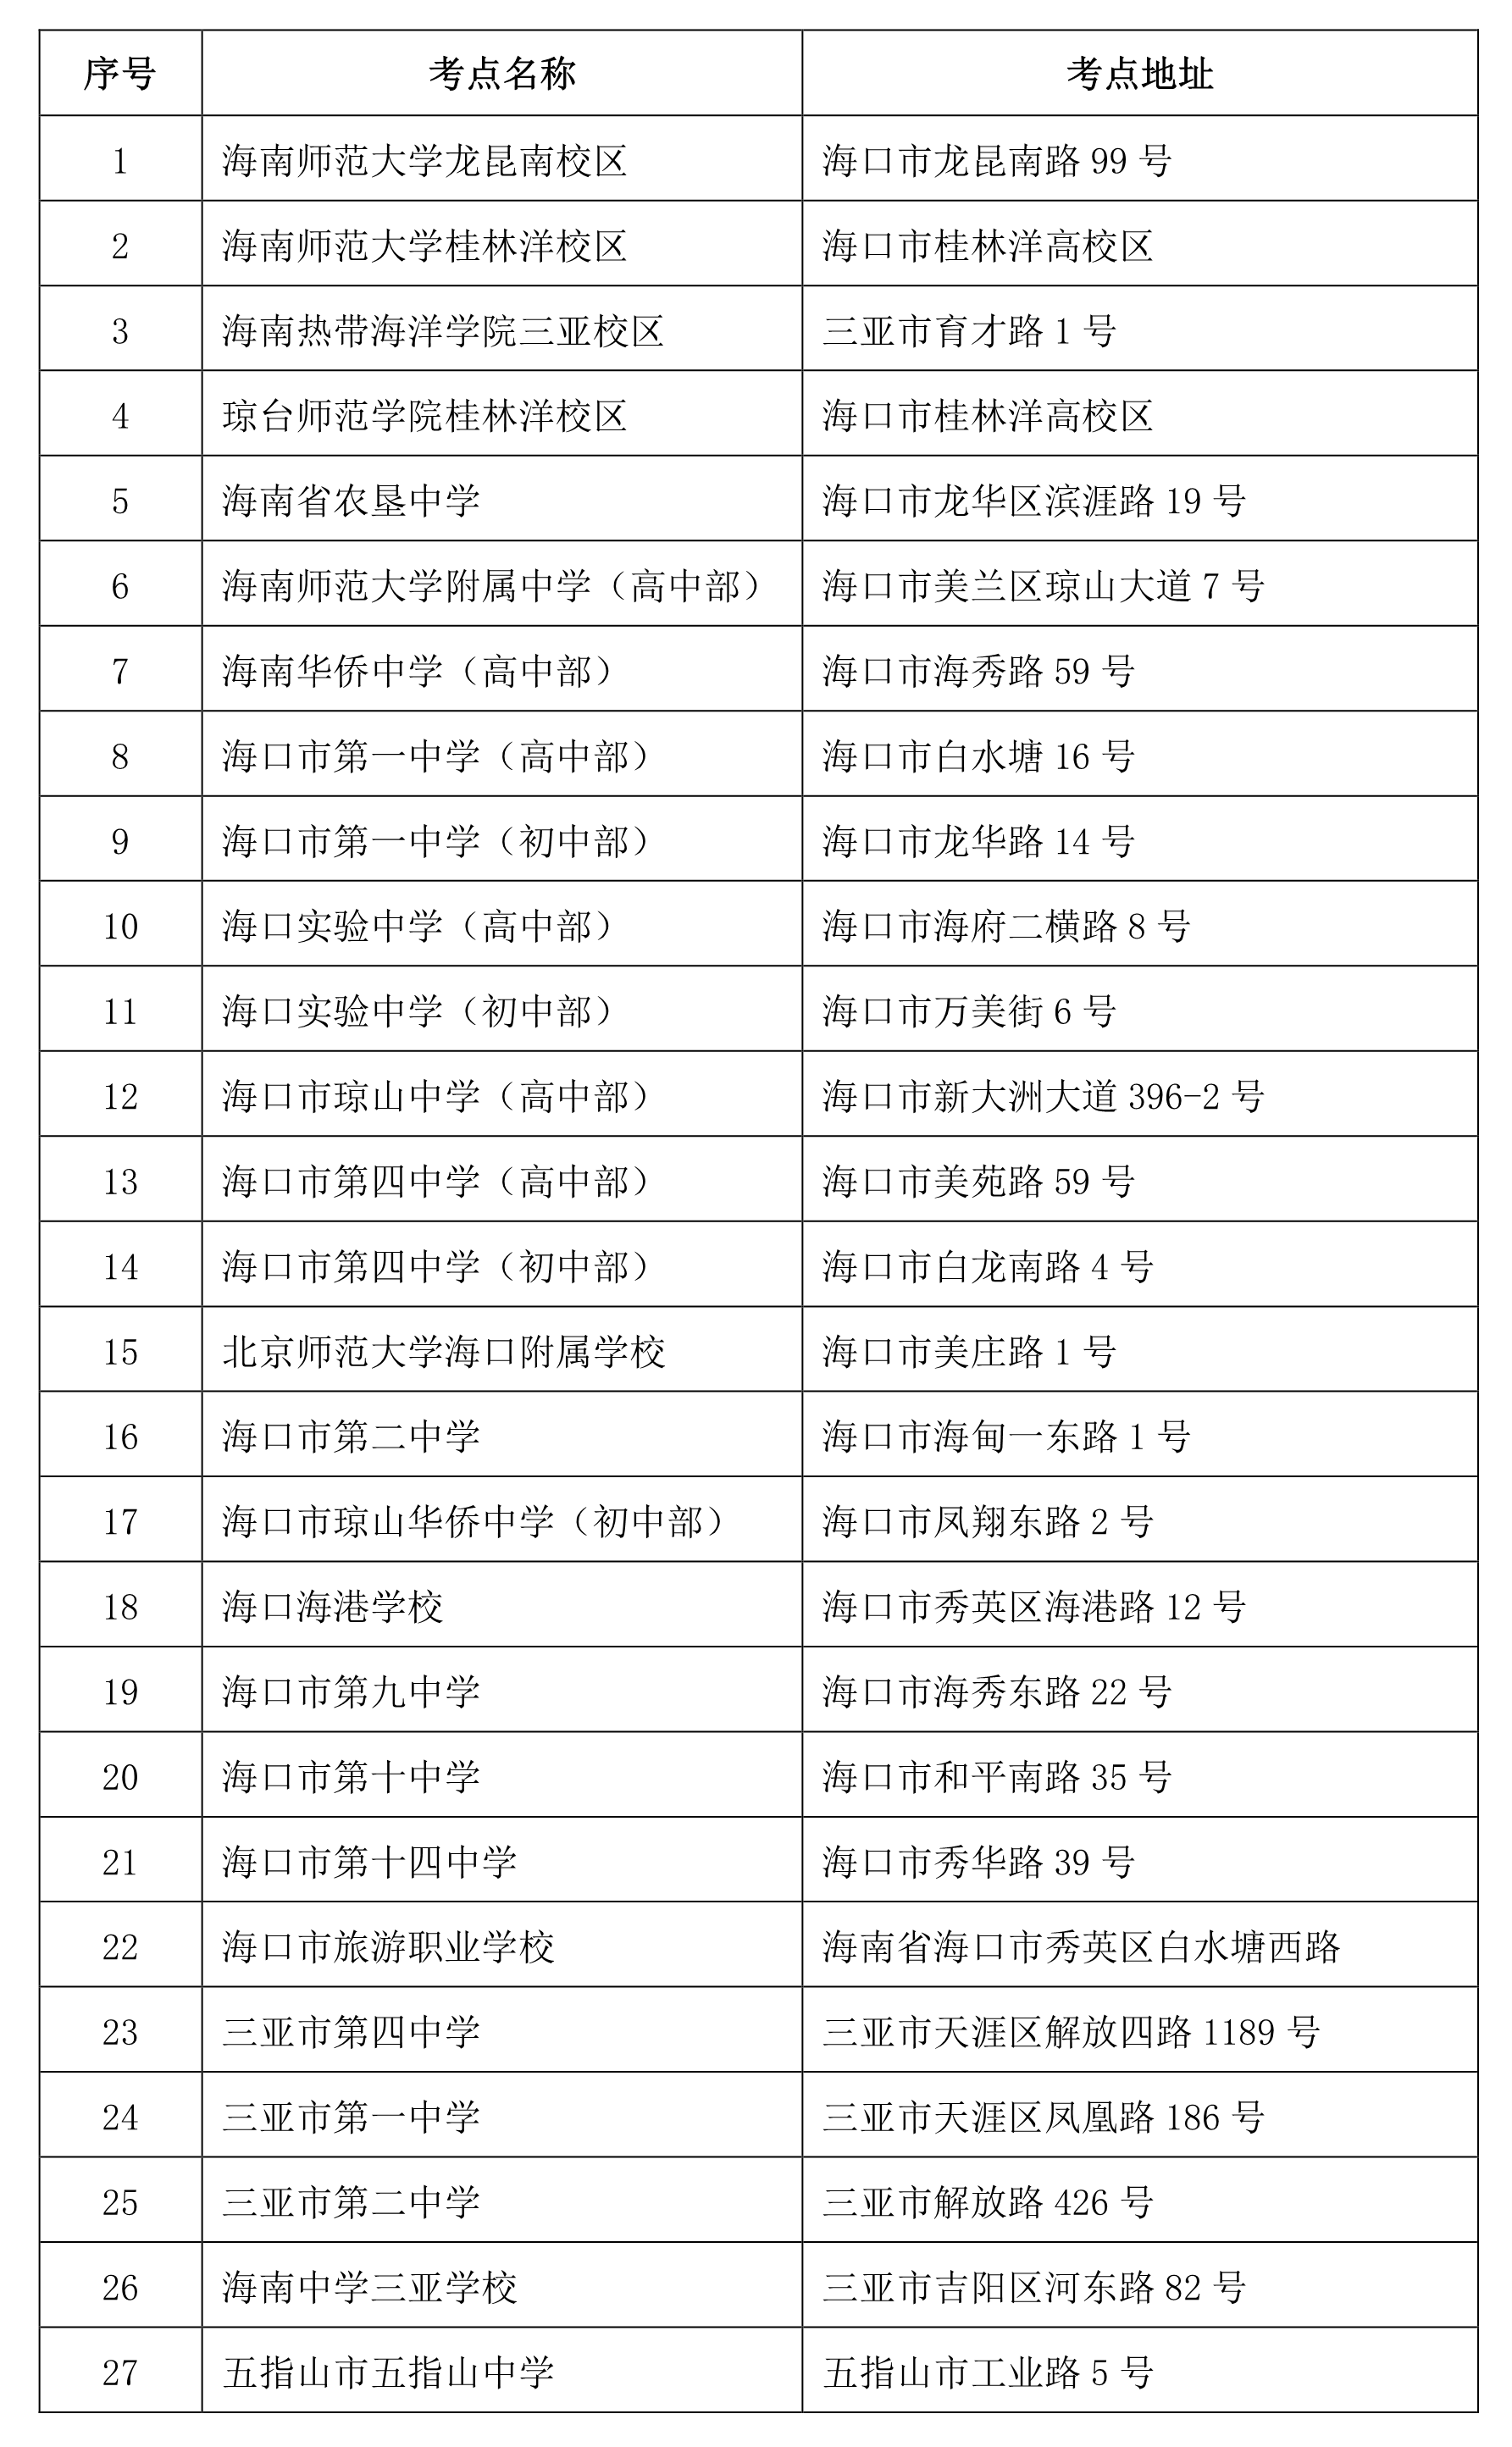 2020海南省中小学教师资格证考点安排 考点地址信息汇总